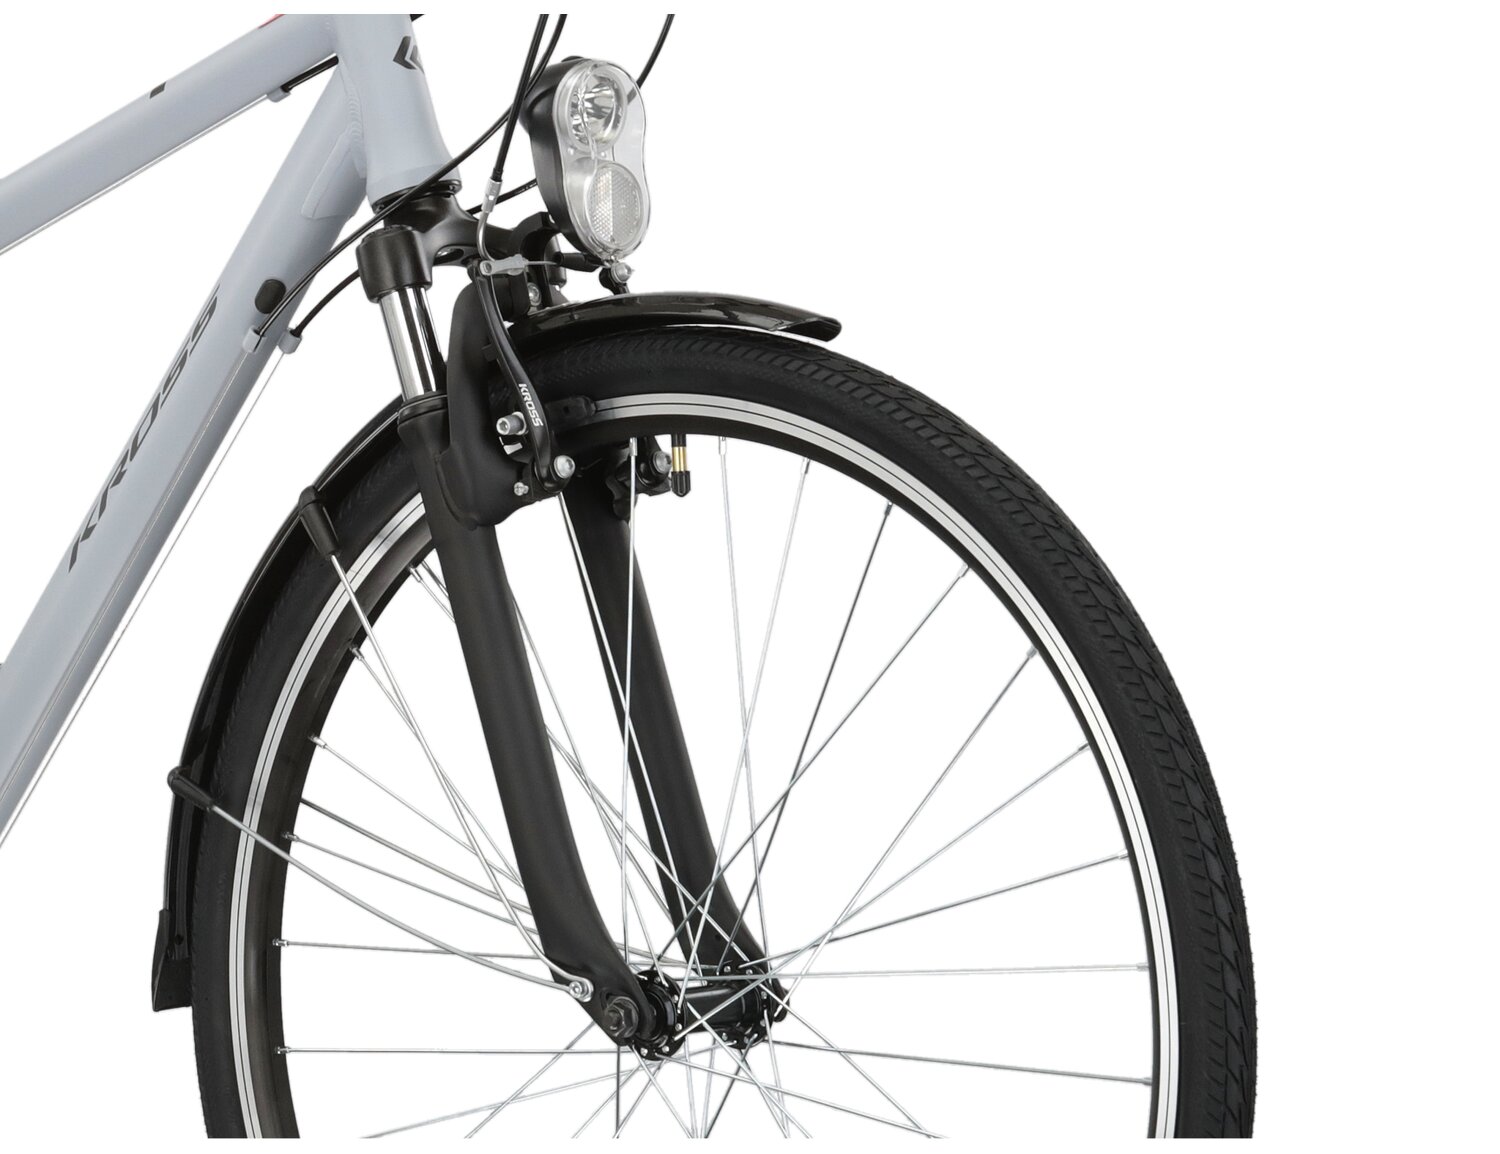 Aluminowa rama, amortyzowany widelec KROSS oraz opony Wanda w rowerze trekkingowym KROSS Trans 1.0 SK 